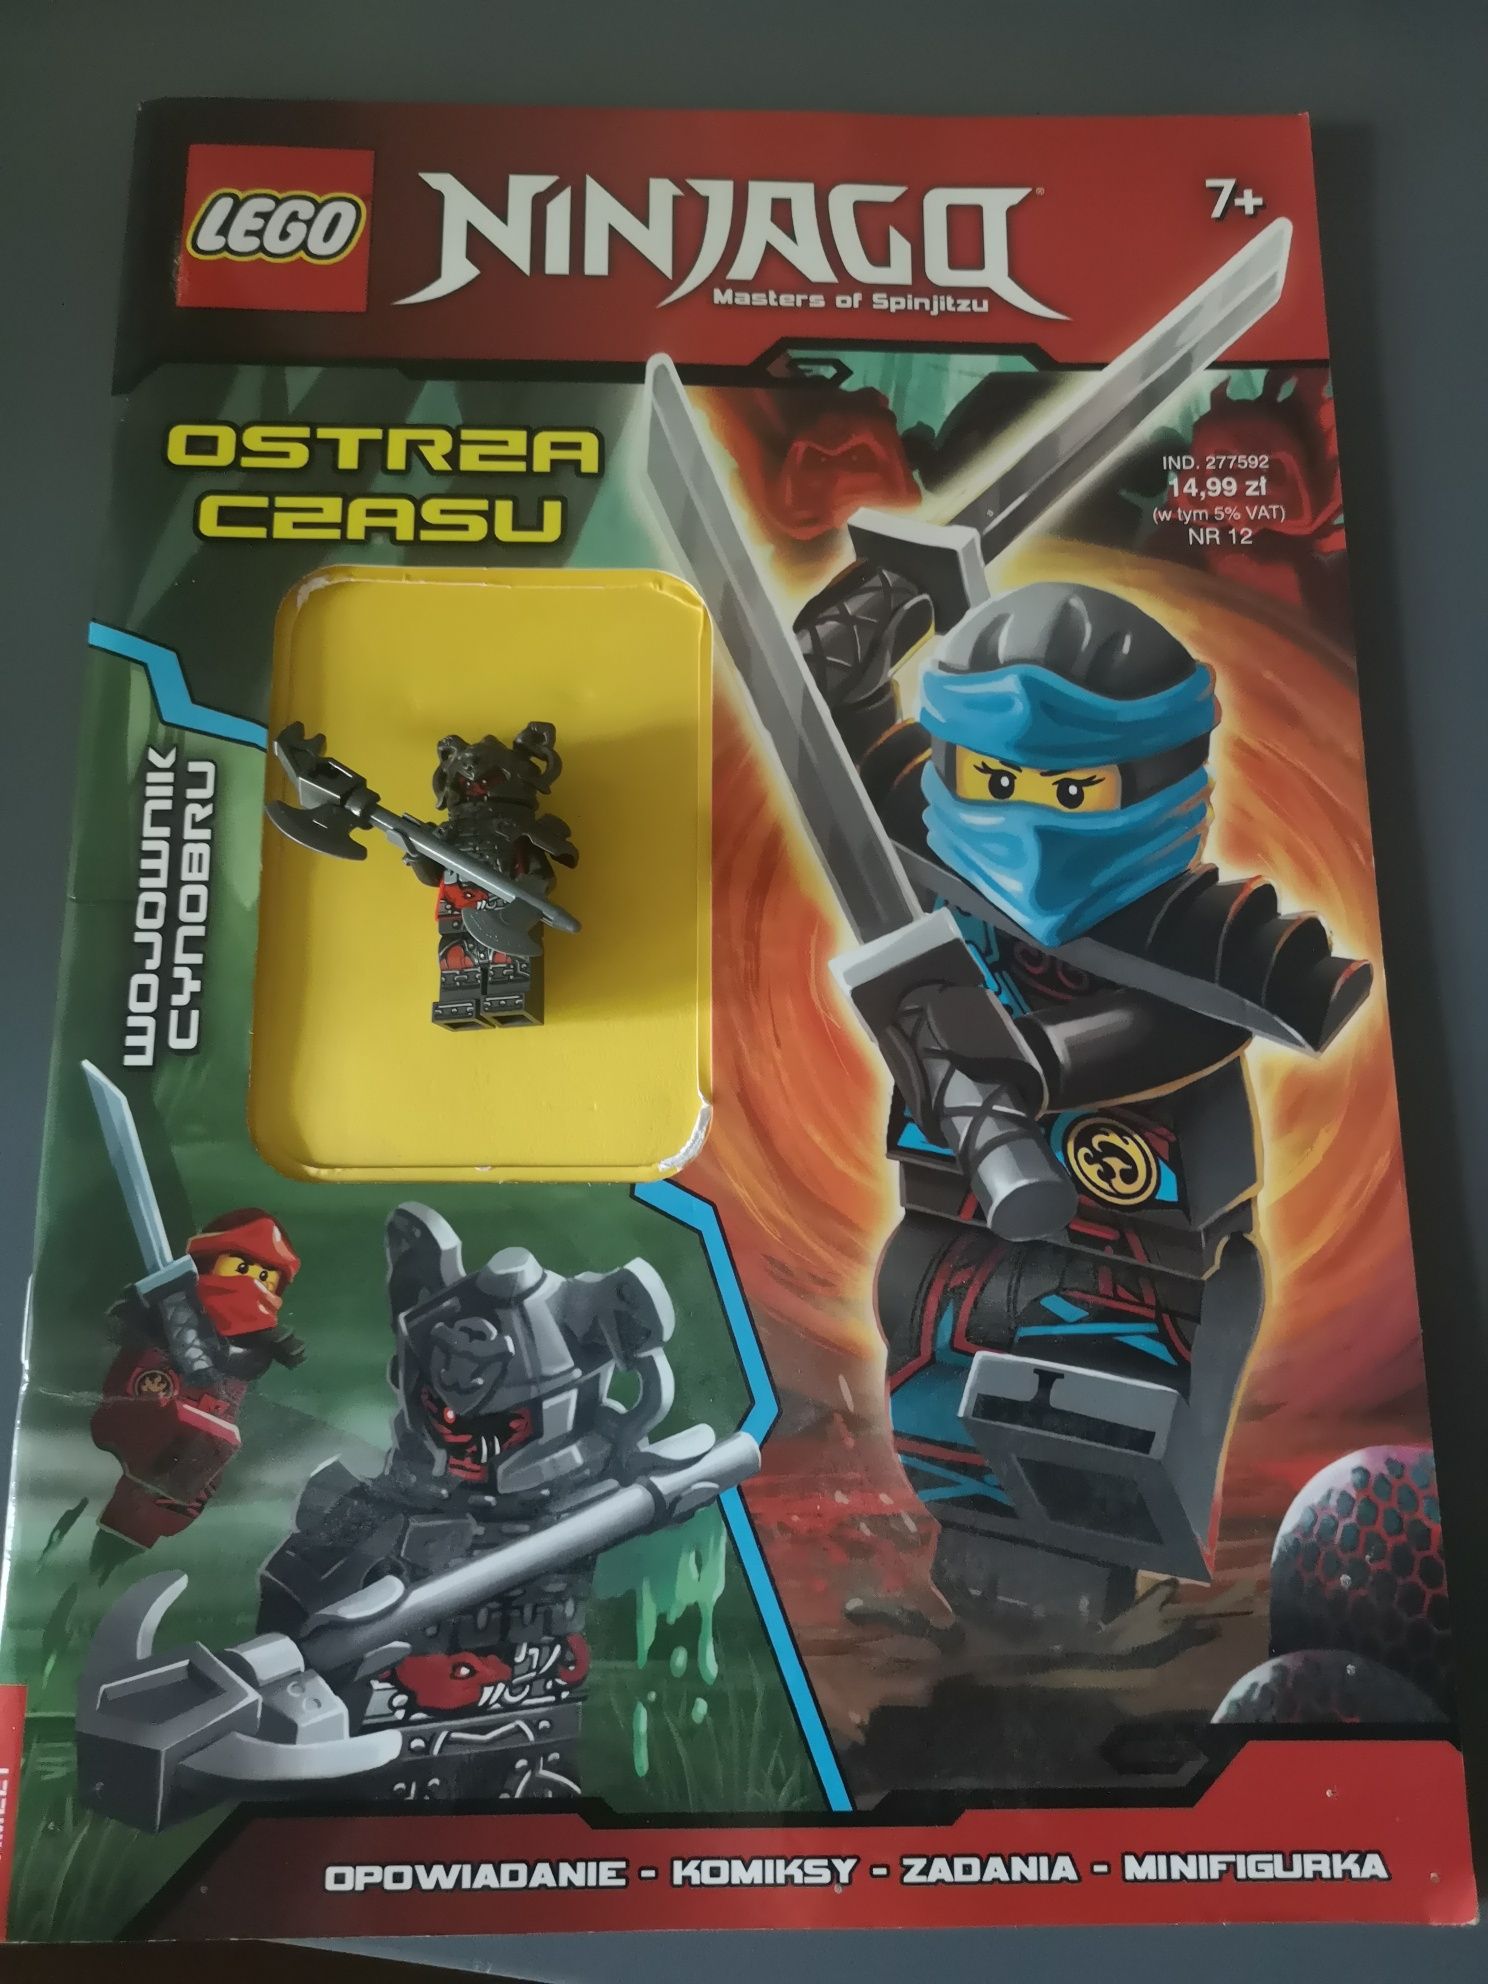 LEGO Ninjago ostrza czasu gazetka z figurką + inna gazetka ninjago